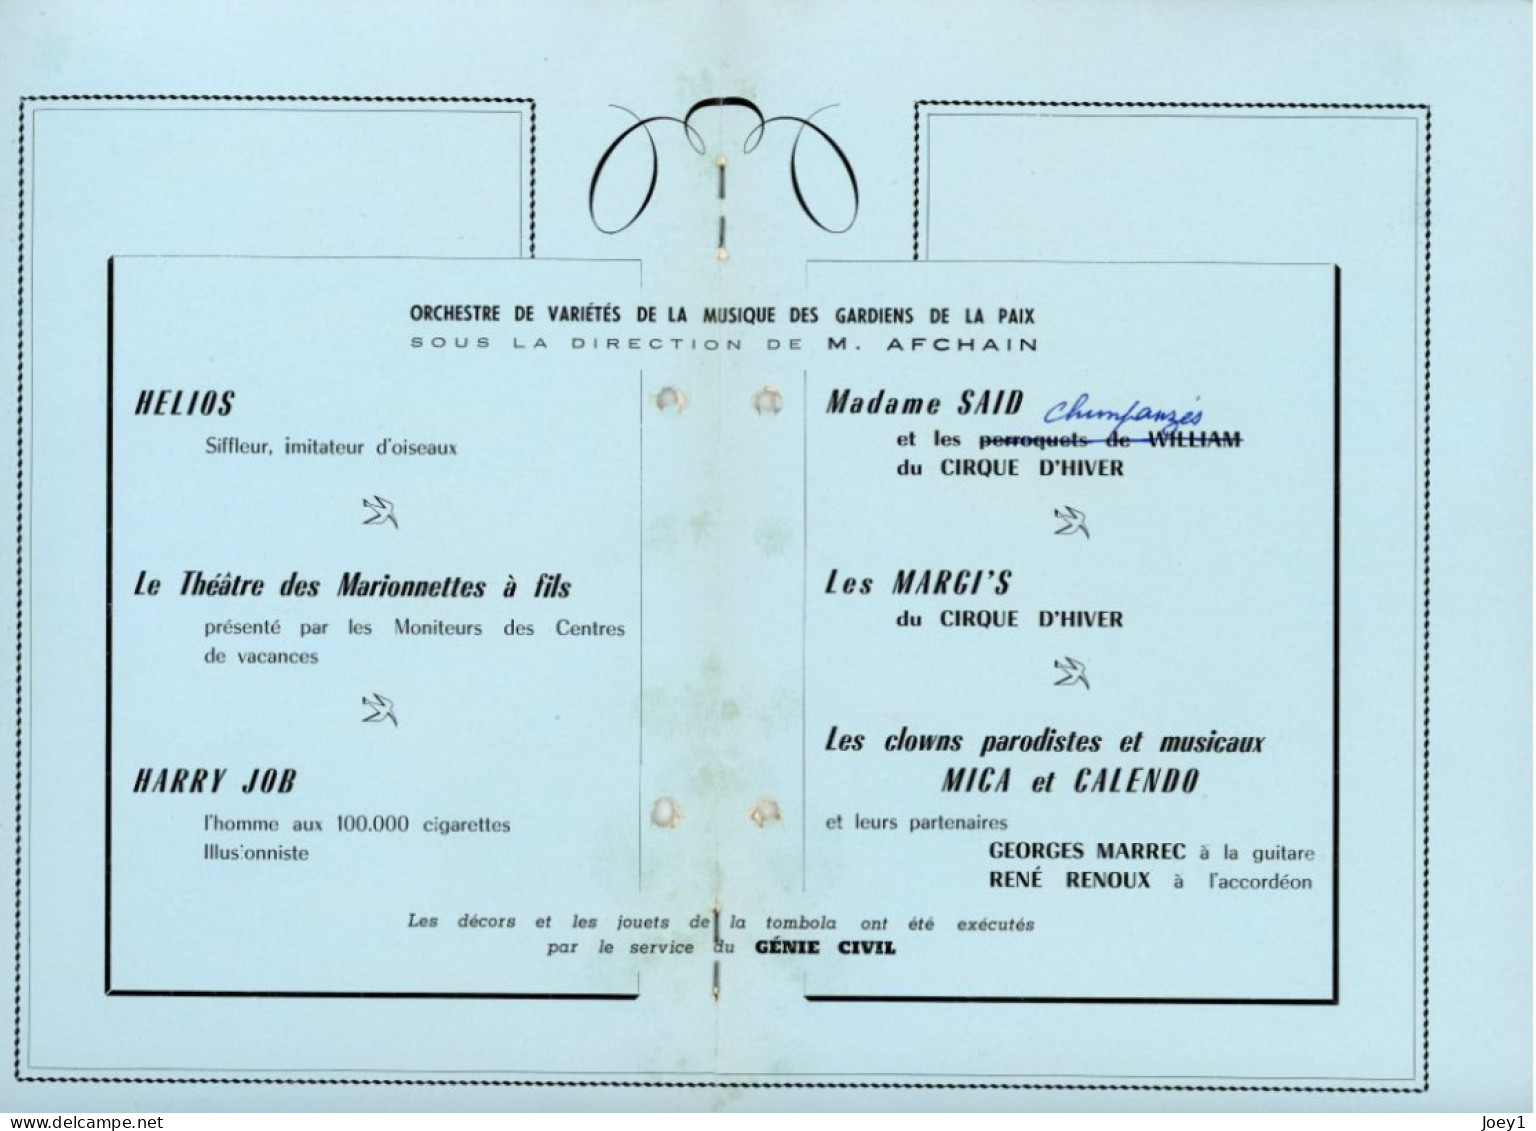 Programme Arbre De Noel Hotel De Ville De Paris 1960 - Programmes